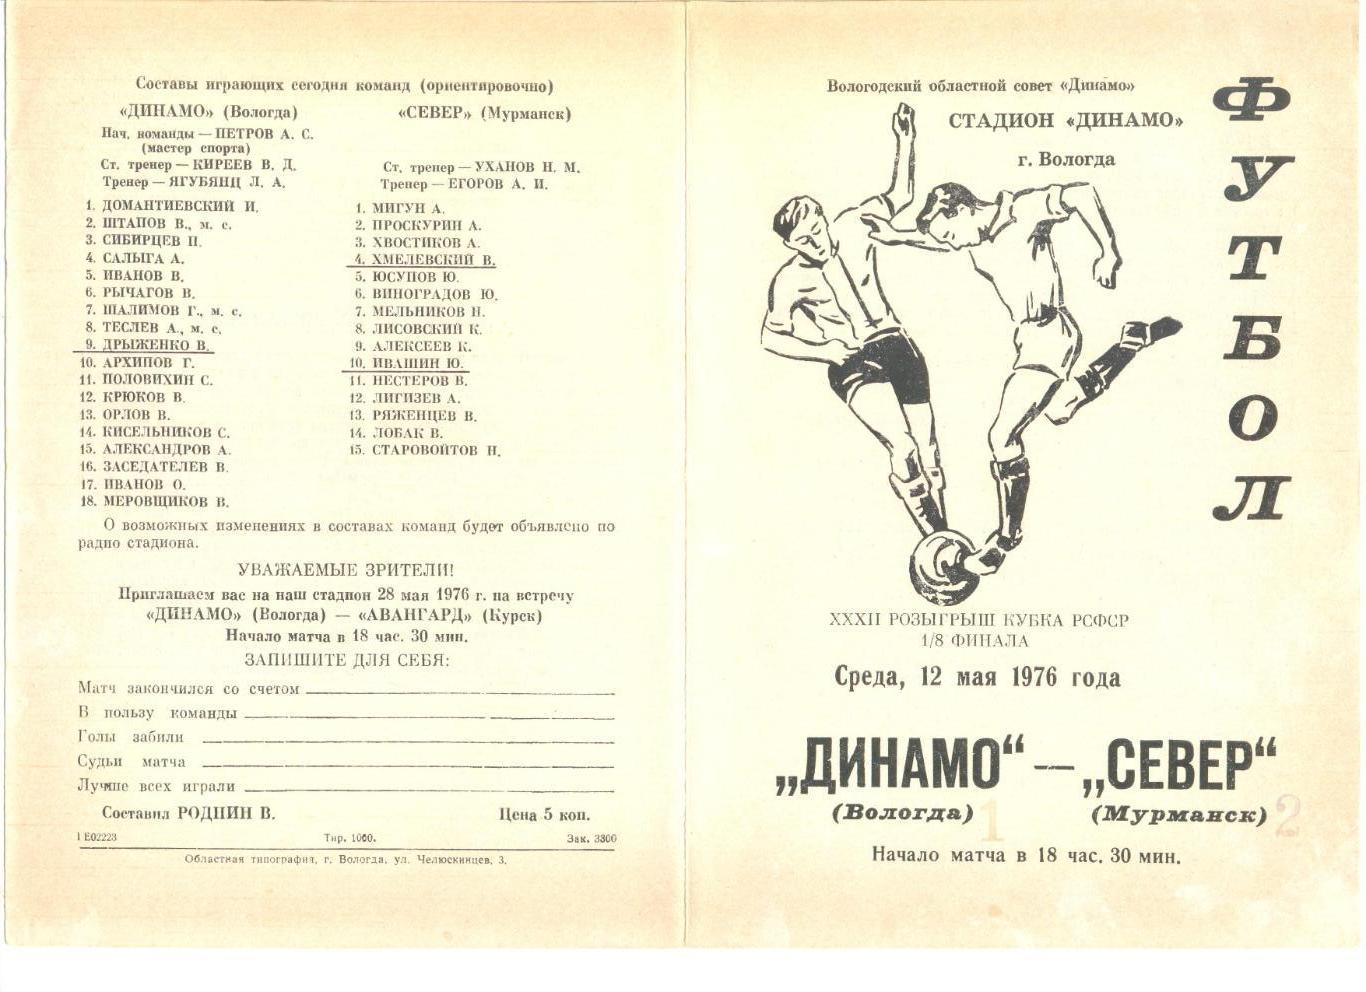 Динамо Вологда - Север Мурманск 12.05.1976 г.